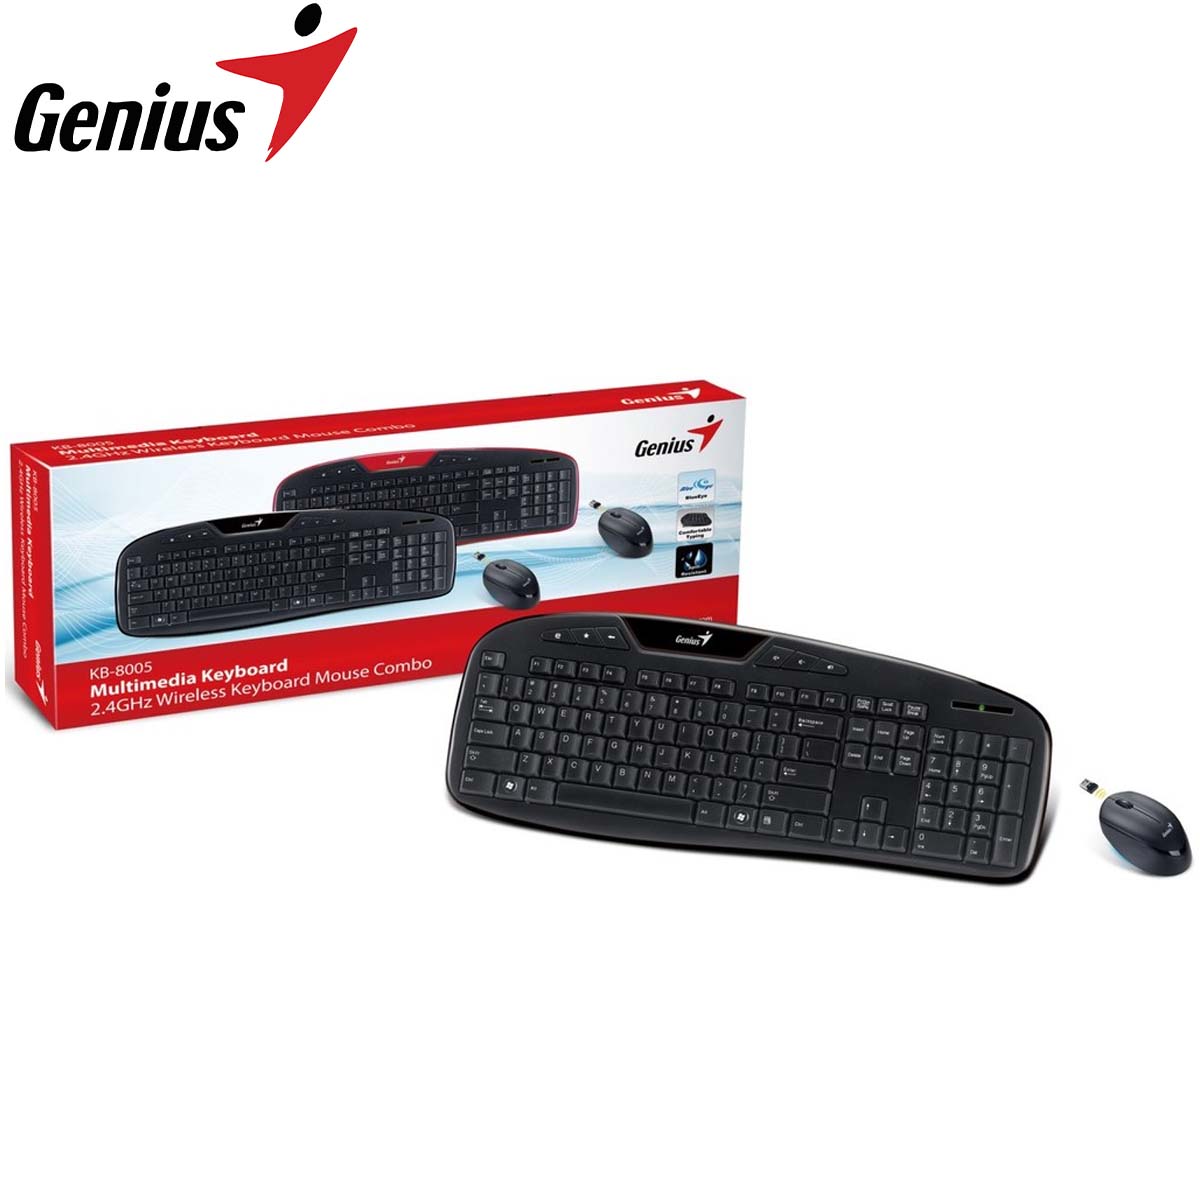 Genius KB-8005 Multimedia Keyboard Wireless Combo